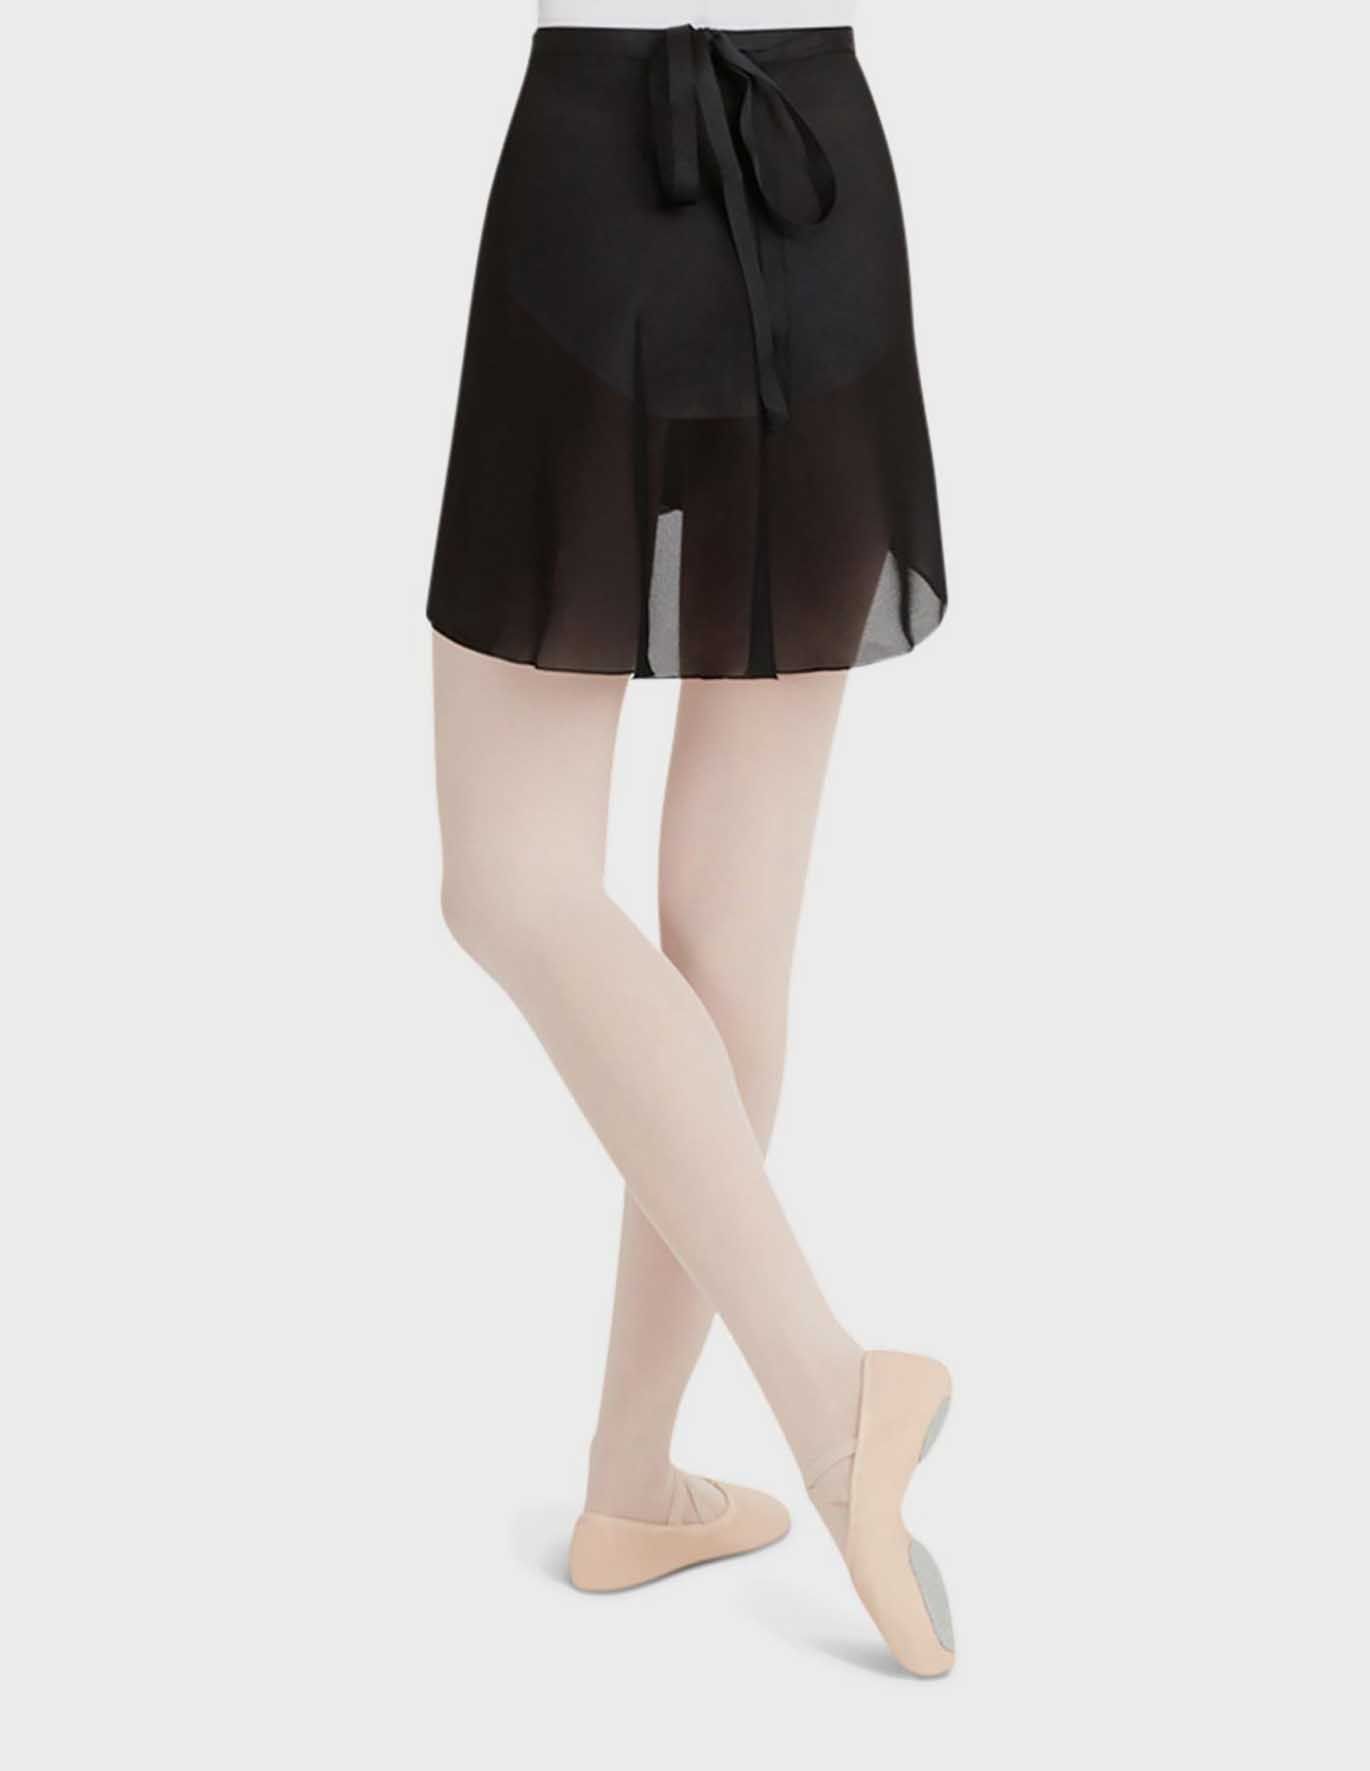 Capezio Short Classic Georgette Wrap Dance Skirt Model 272 